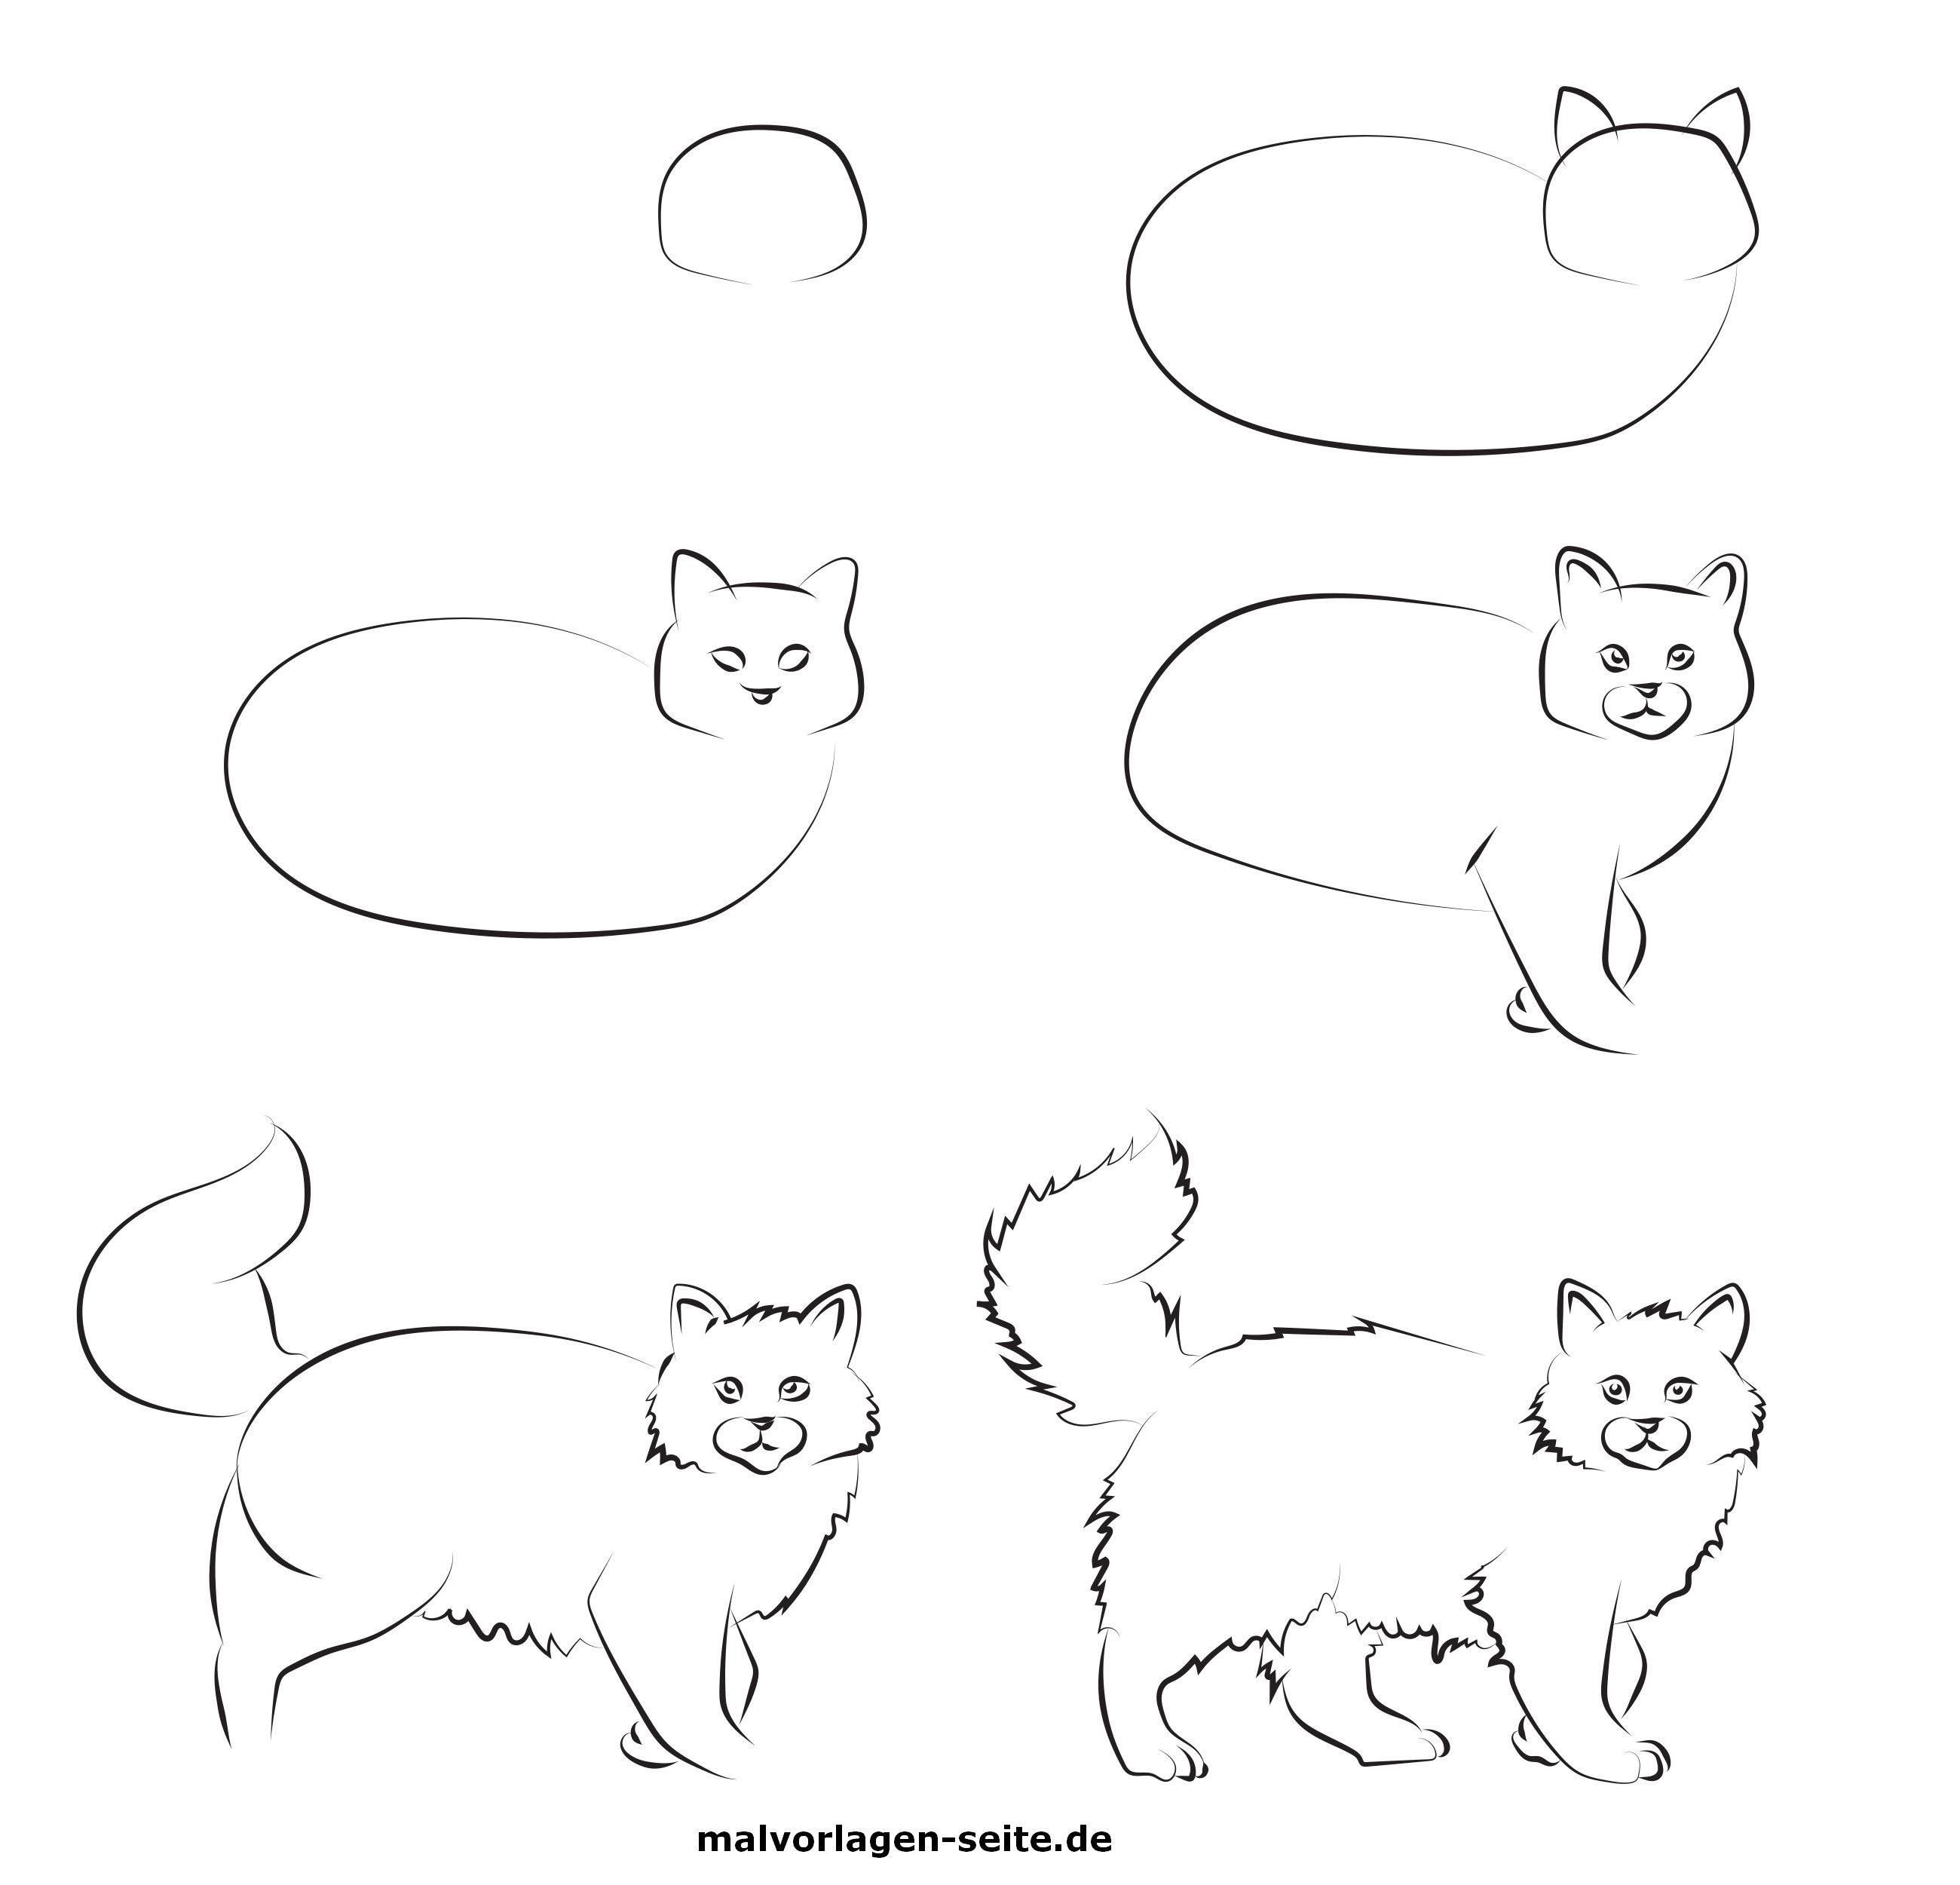 Нарисовать кошку поэтапно для детей. Этапы рисования кошки. Кошка для рисования для детей. Этапы рисования кошки для дошкольников. Поэтапное рисование кошки для детей.